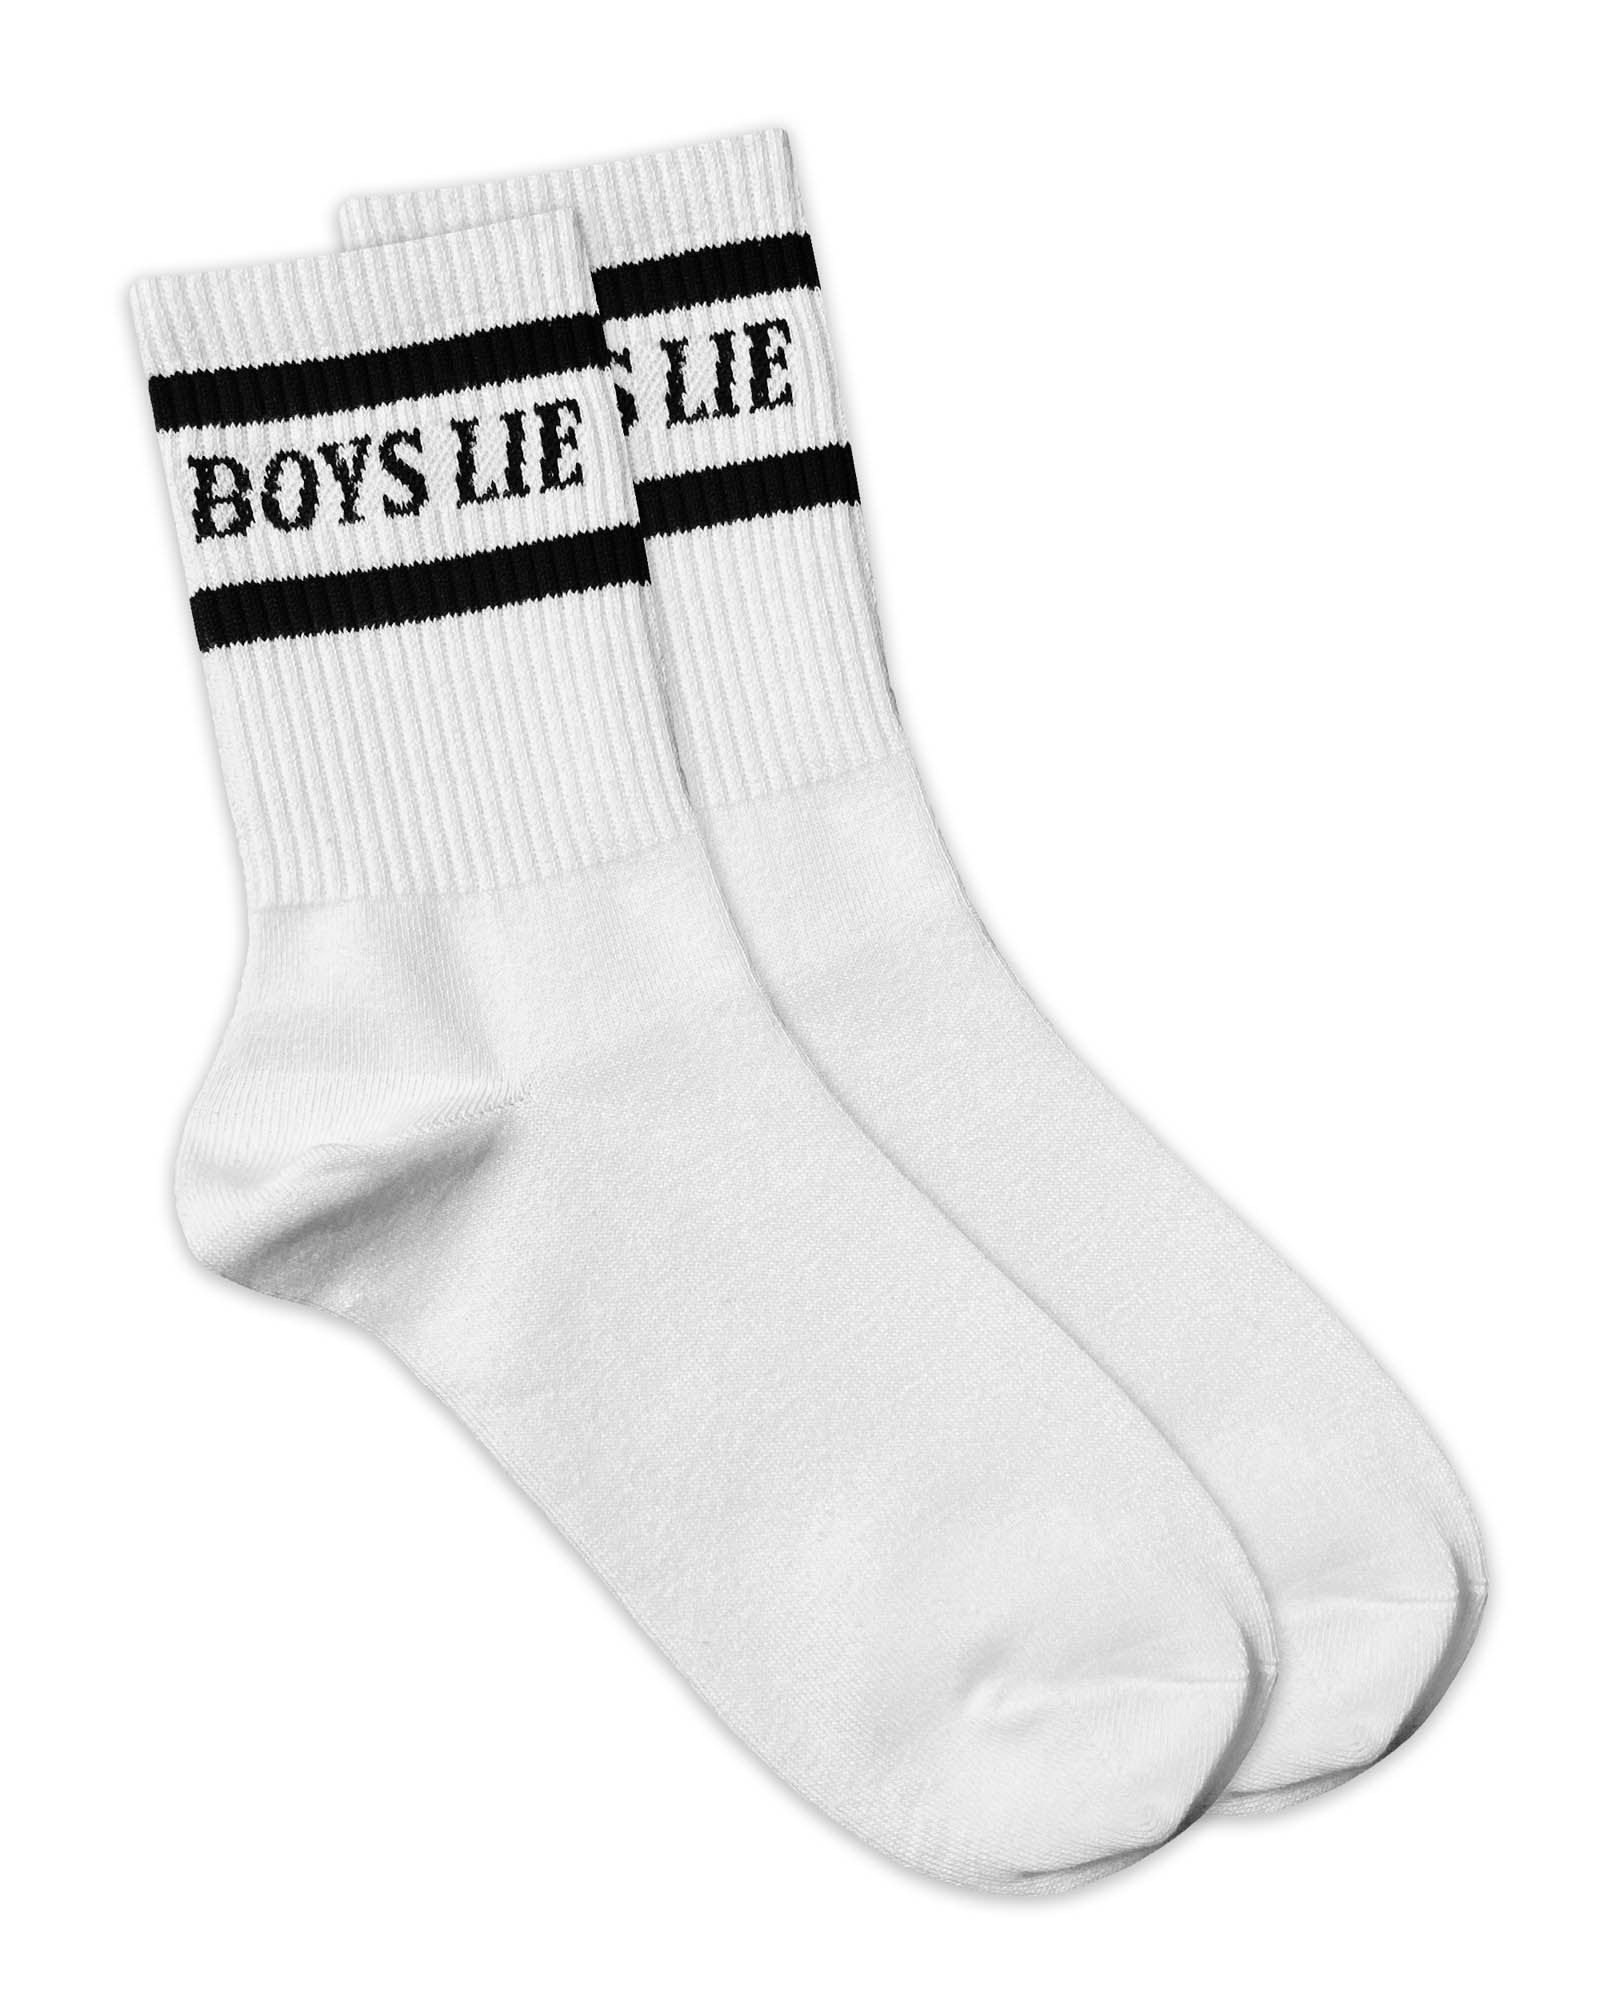 Boys Lie Neutral Socks - Black